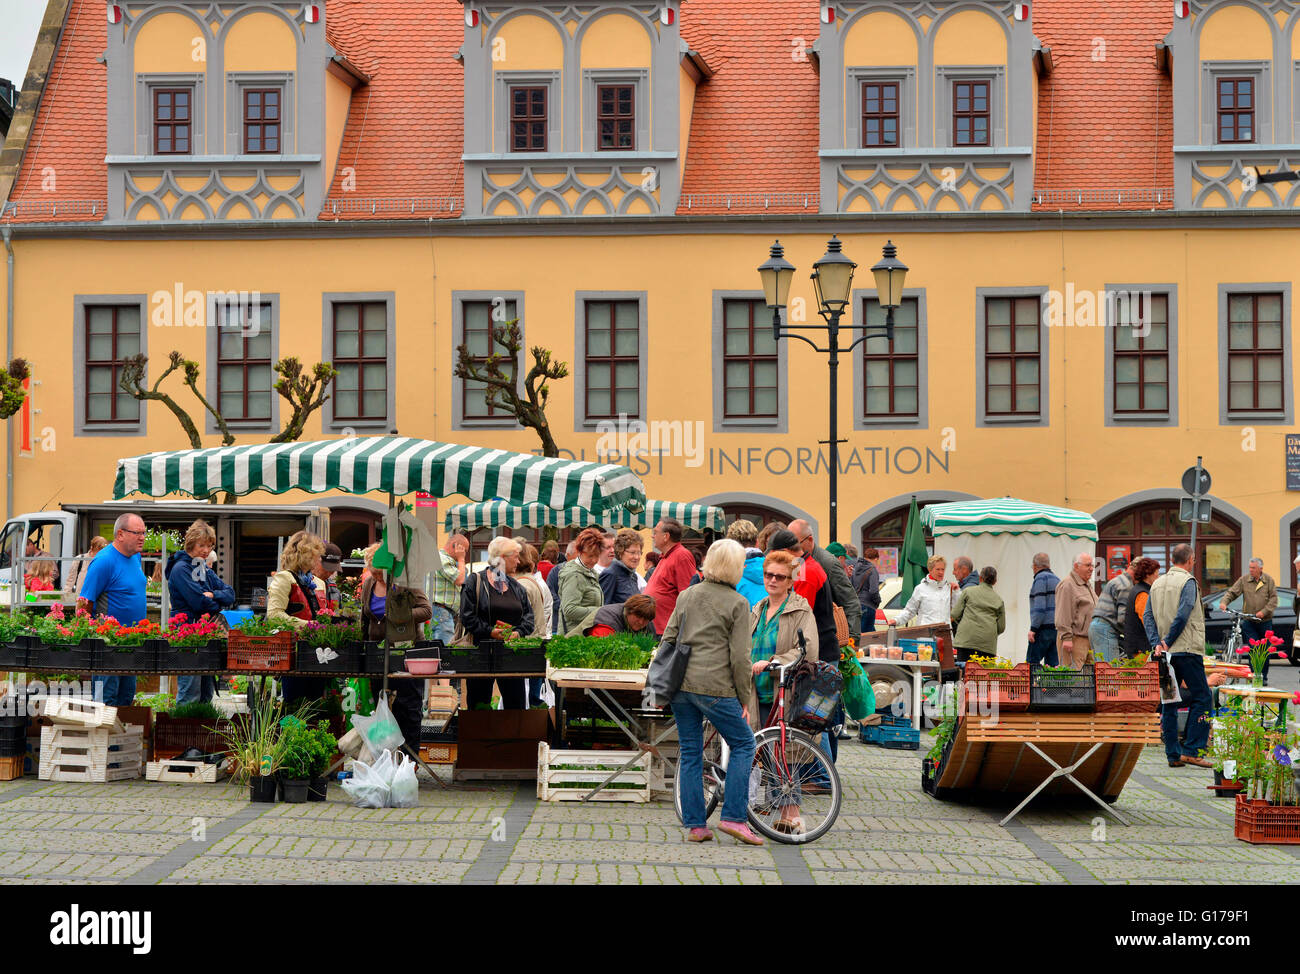 Wochenmarkt, Marktplatz, Naumburg, Sachsen-Anhalt, Deutschland Foto Stock